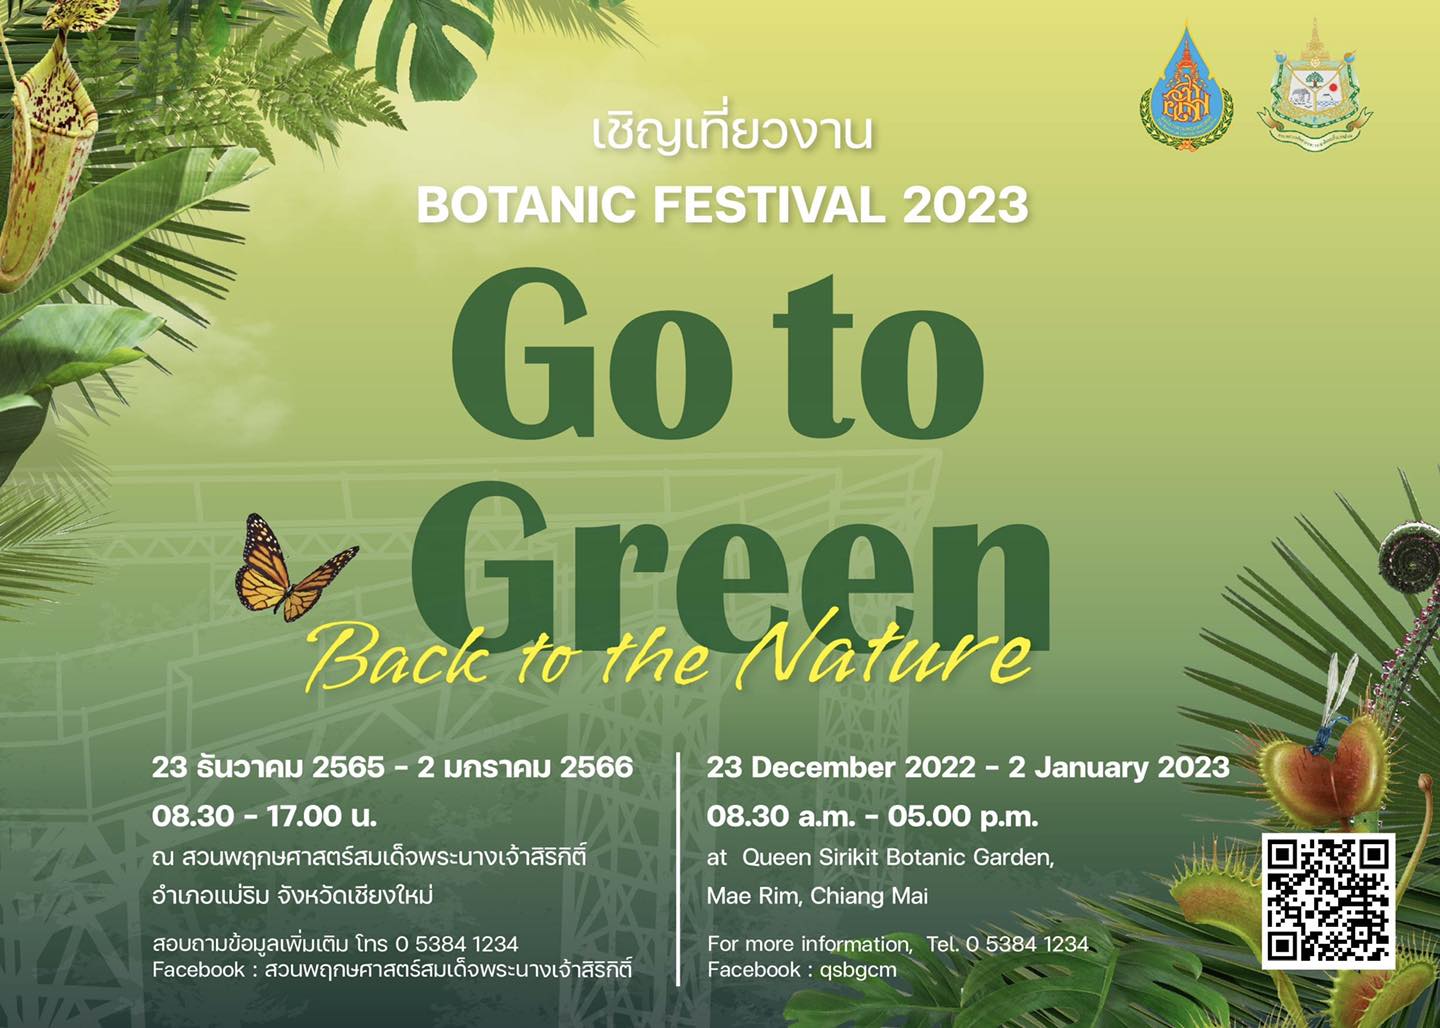 องค์การสวนพฤกษศาสตร์ เชิญเที่ยวงาน Botanic Festival 2023 : Go to Green! Back to the Nature ที่ จ.เชียงใหม่